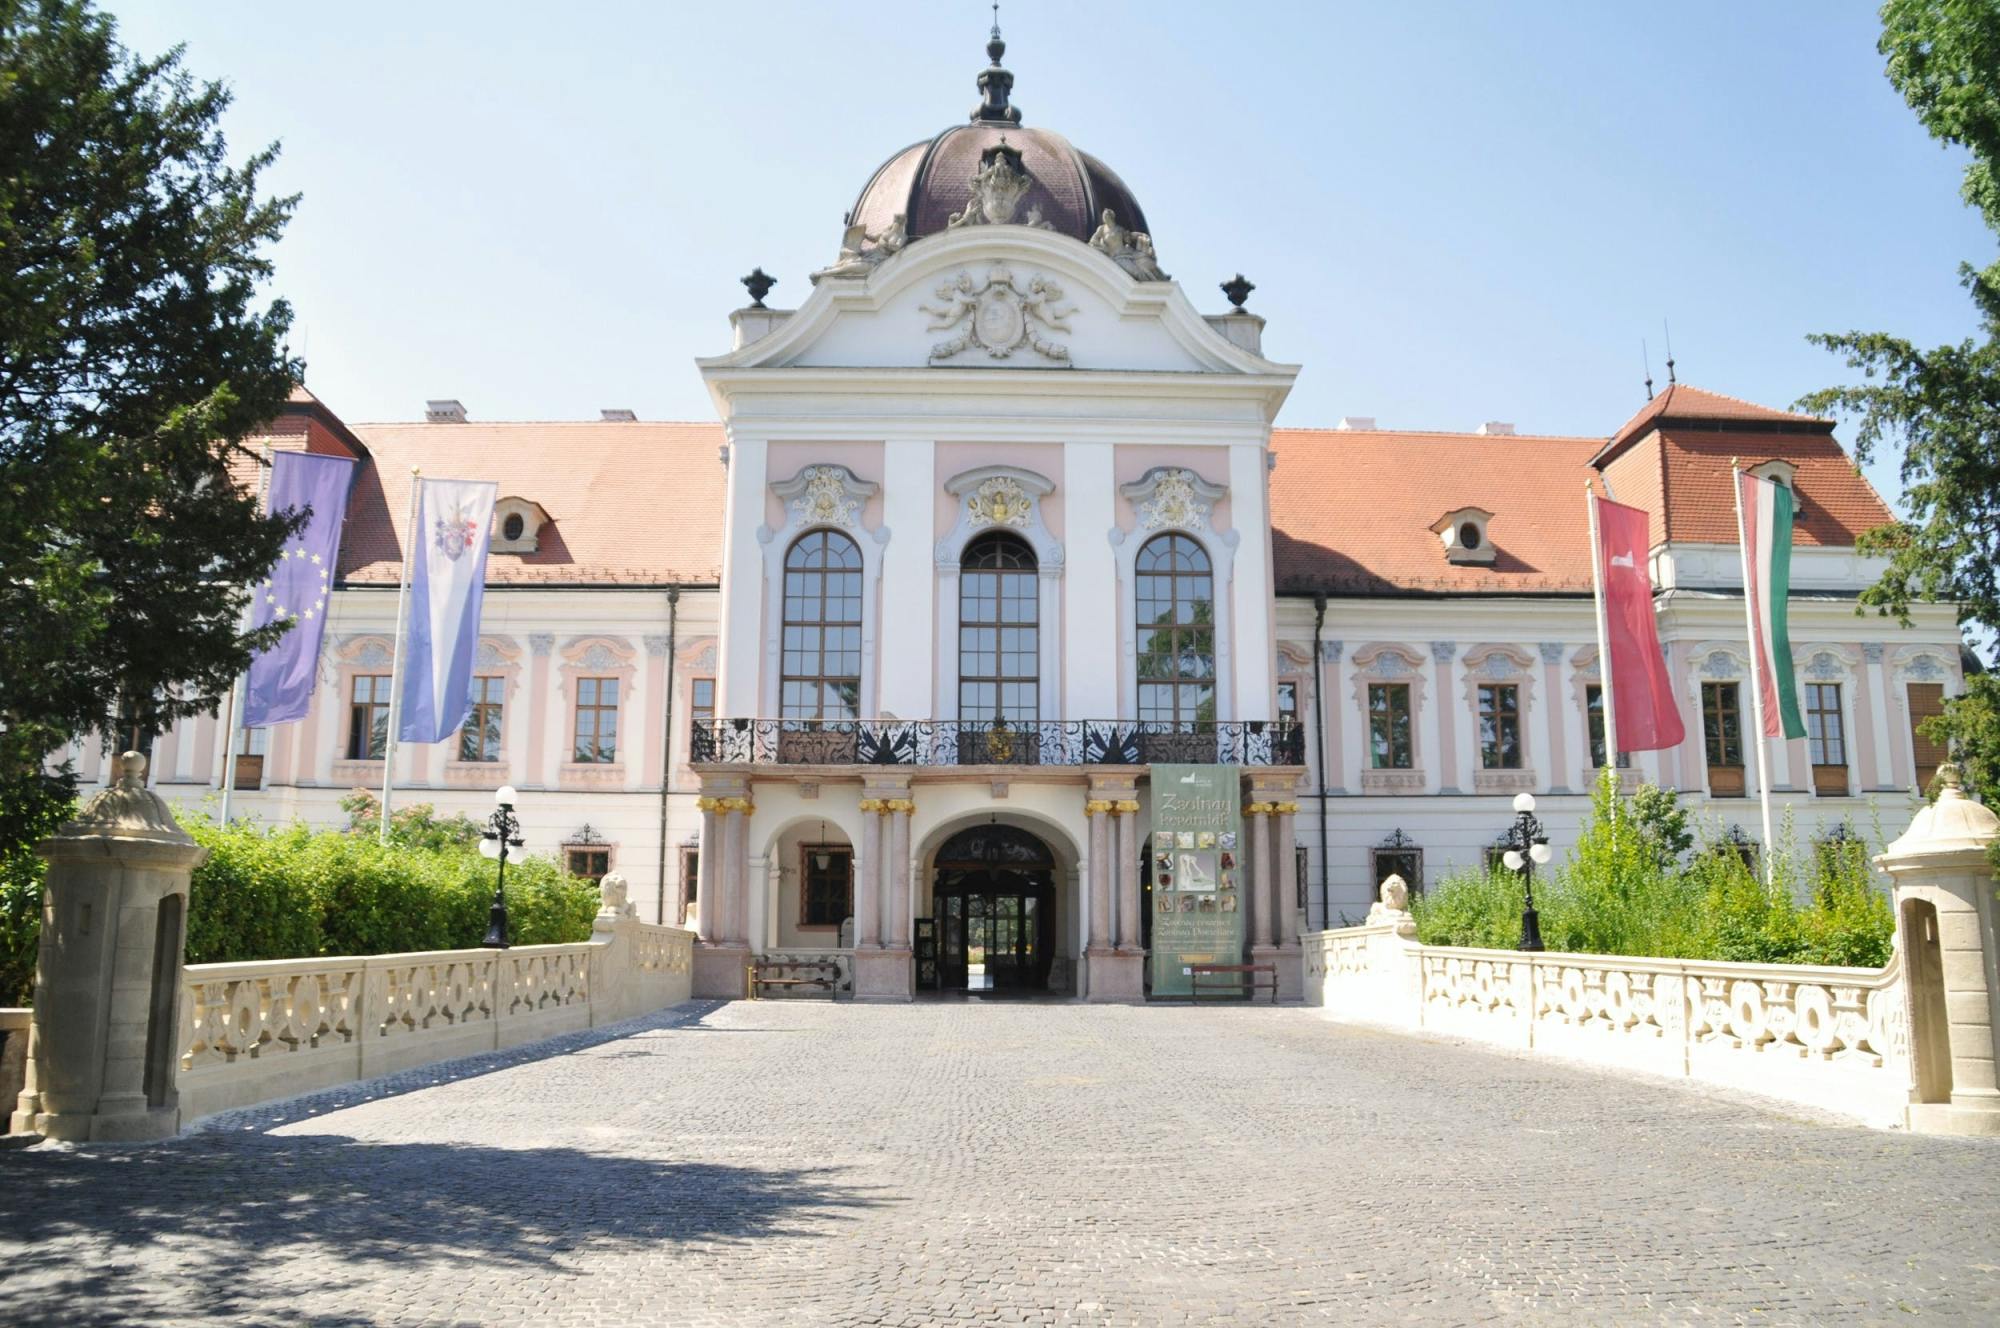 Excursión de medio día al palacio real Gödöllő de la princesa Sissi desde Budapest